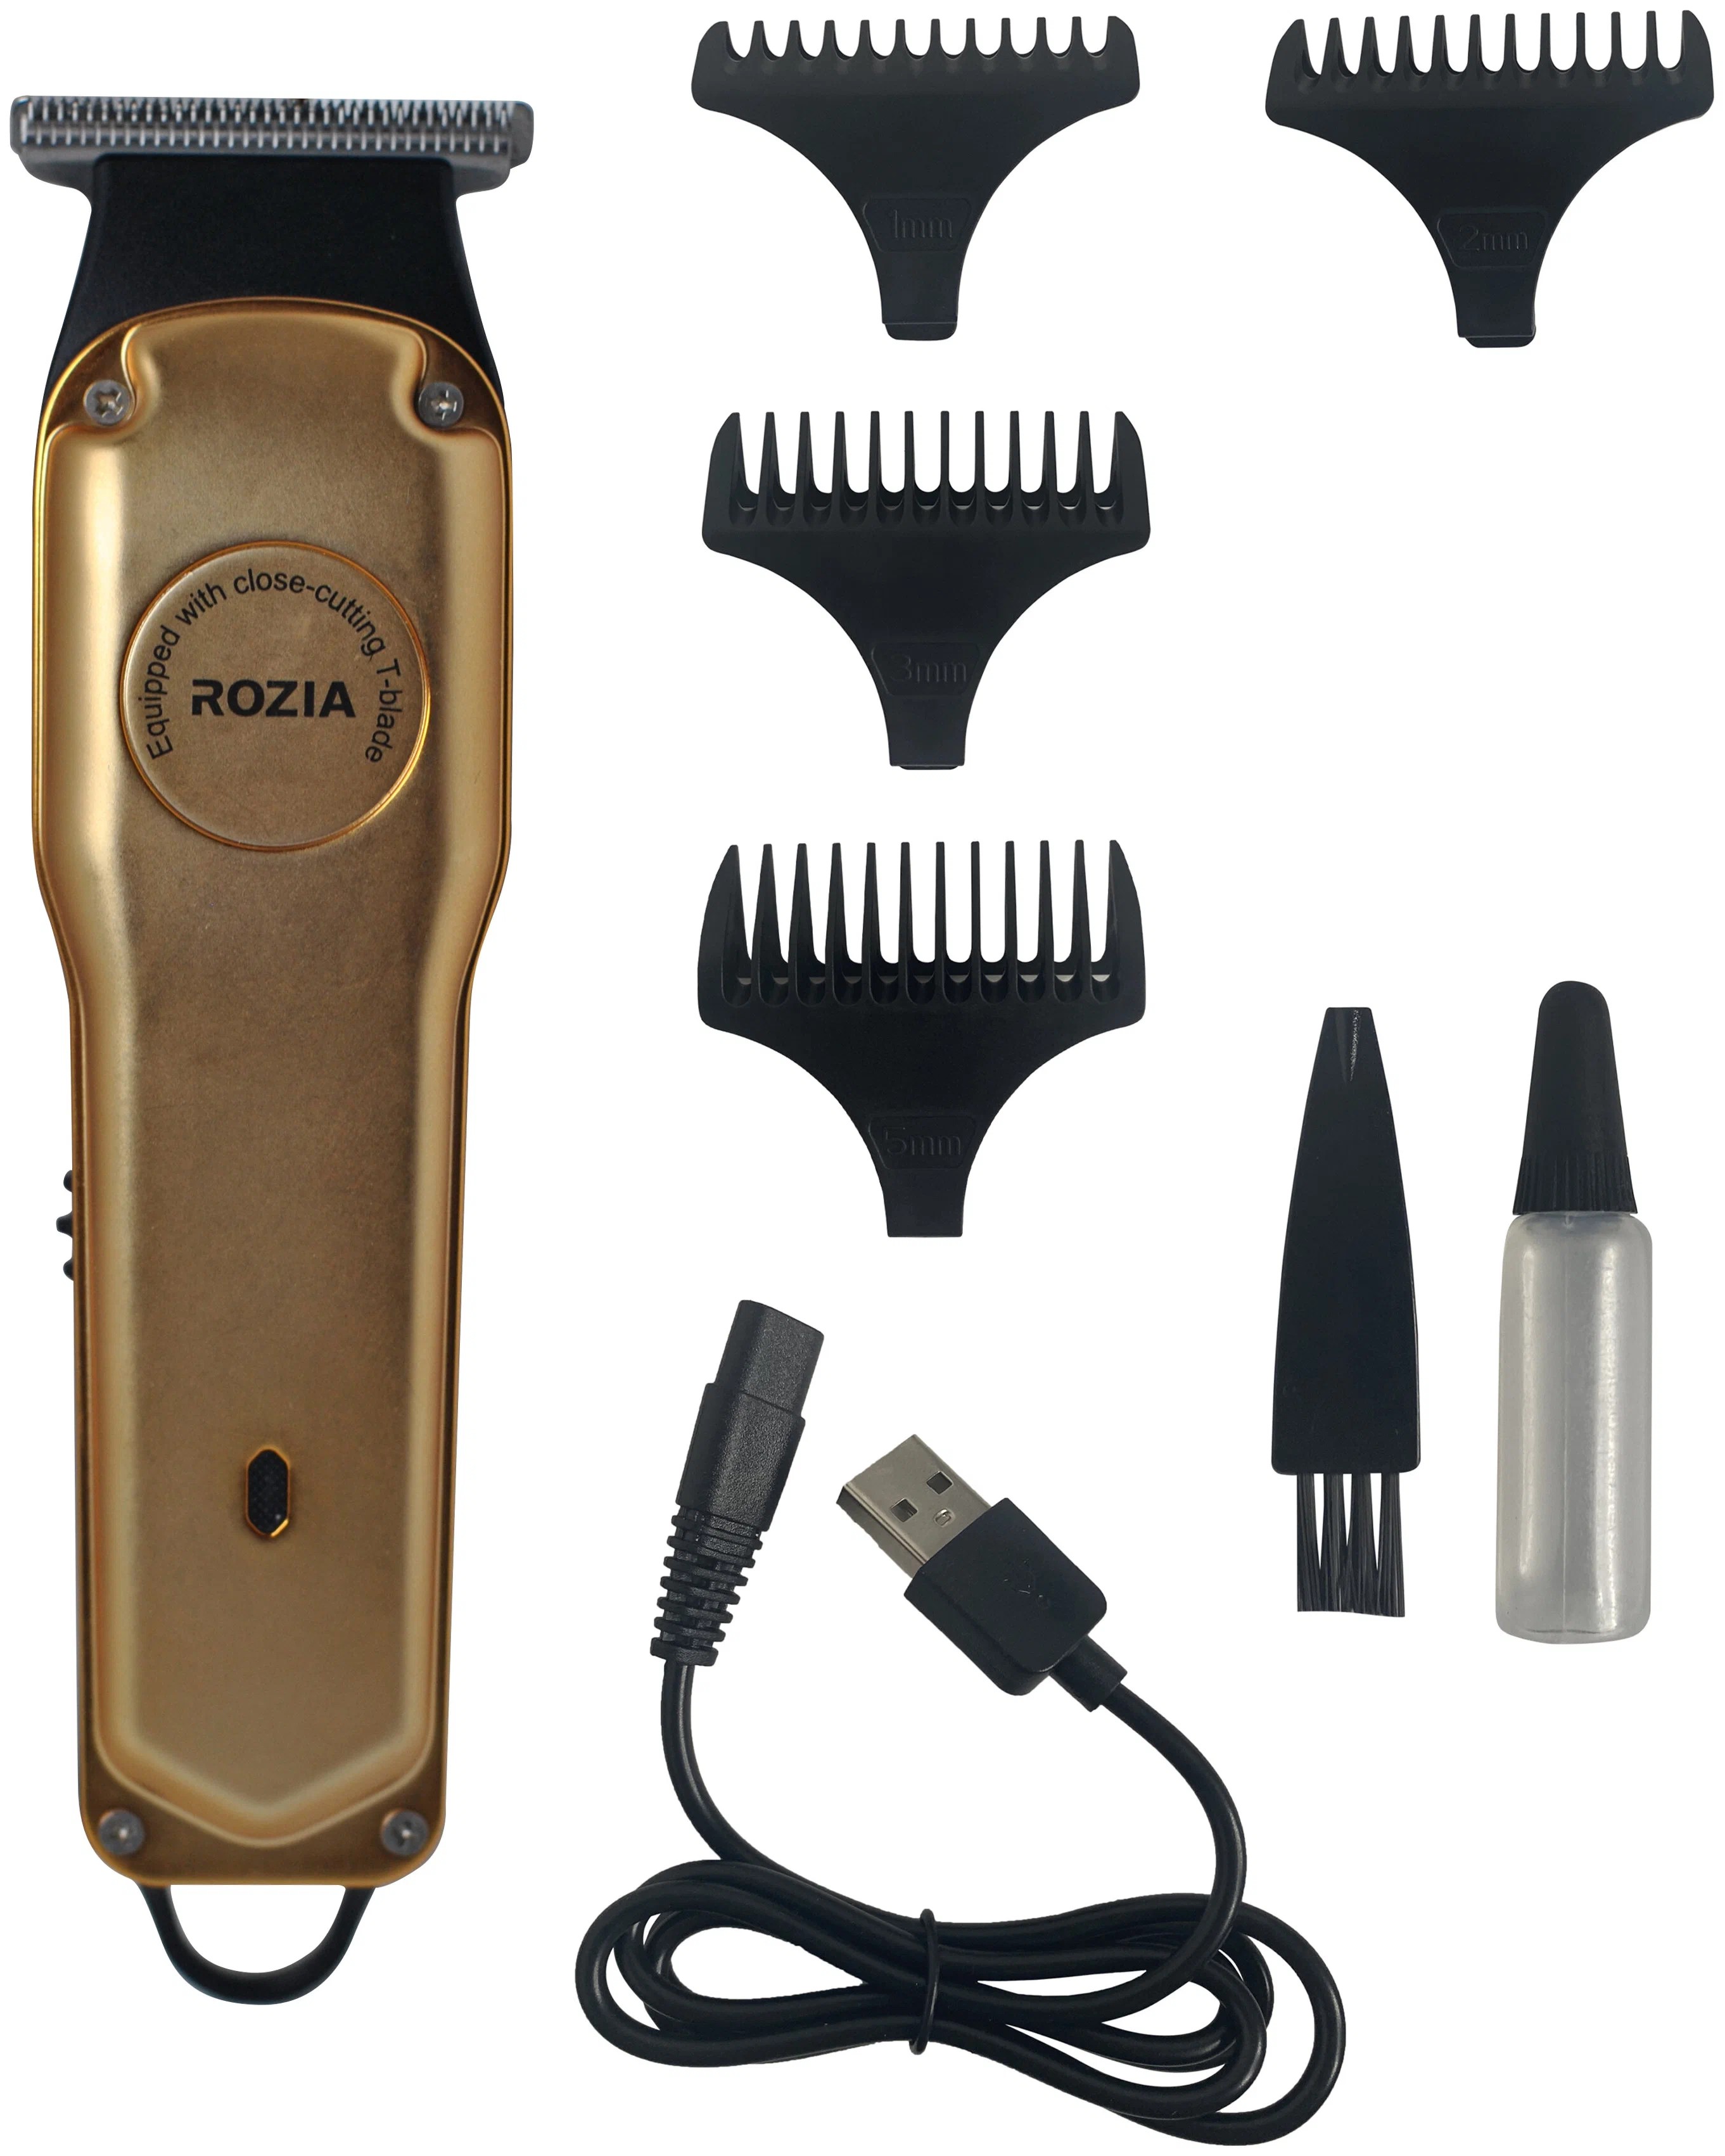 Машинка для стрижки волос Rozia HQ279 триммер для стрижки волос компактный 3 насадки металл